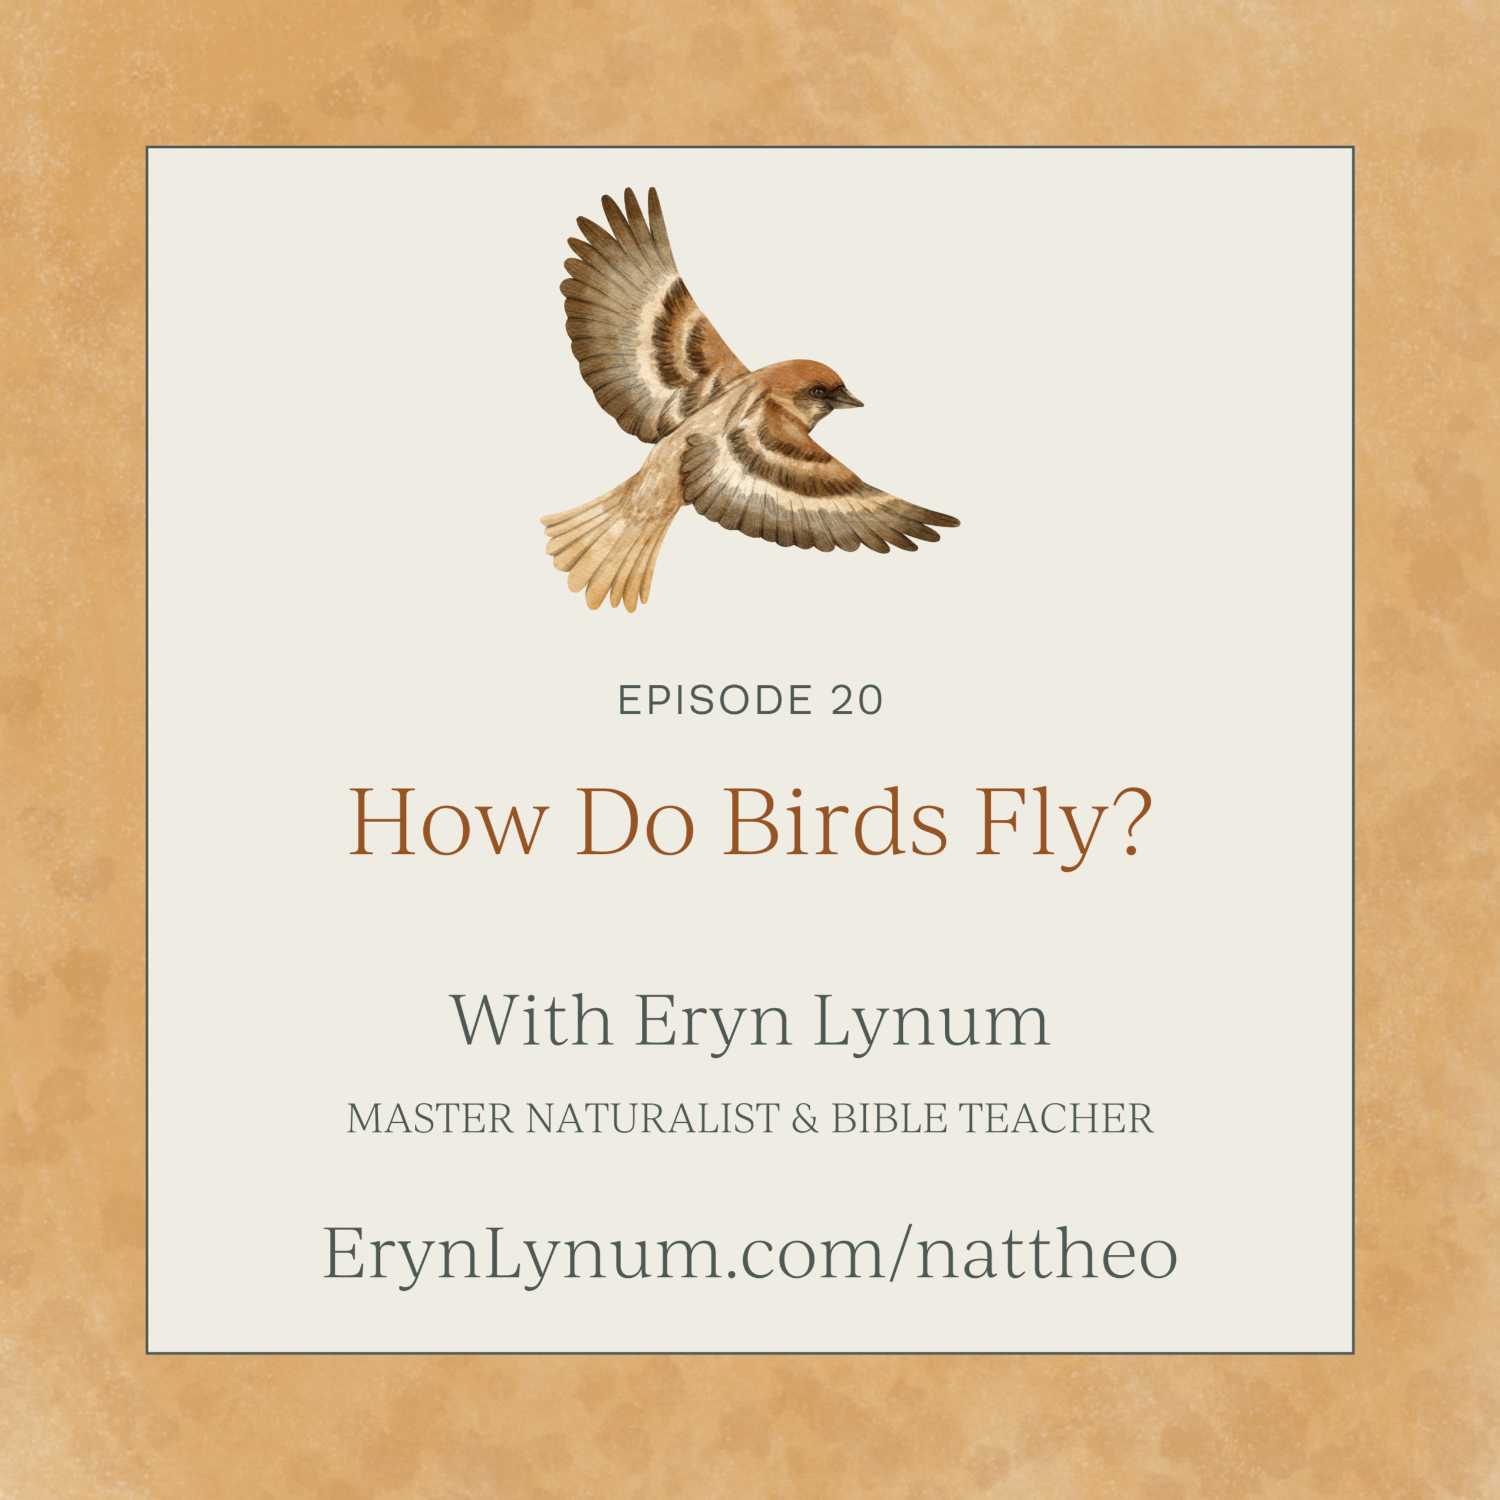 How Do Birds Fly? Episode 20